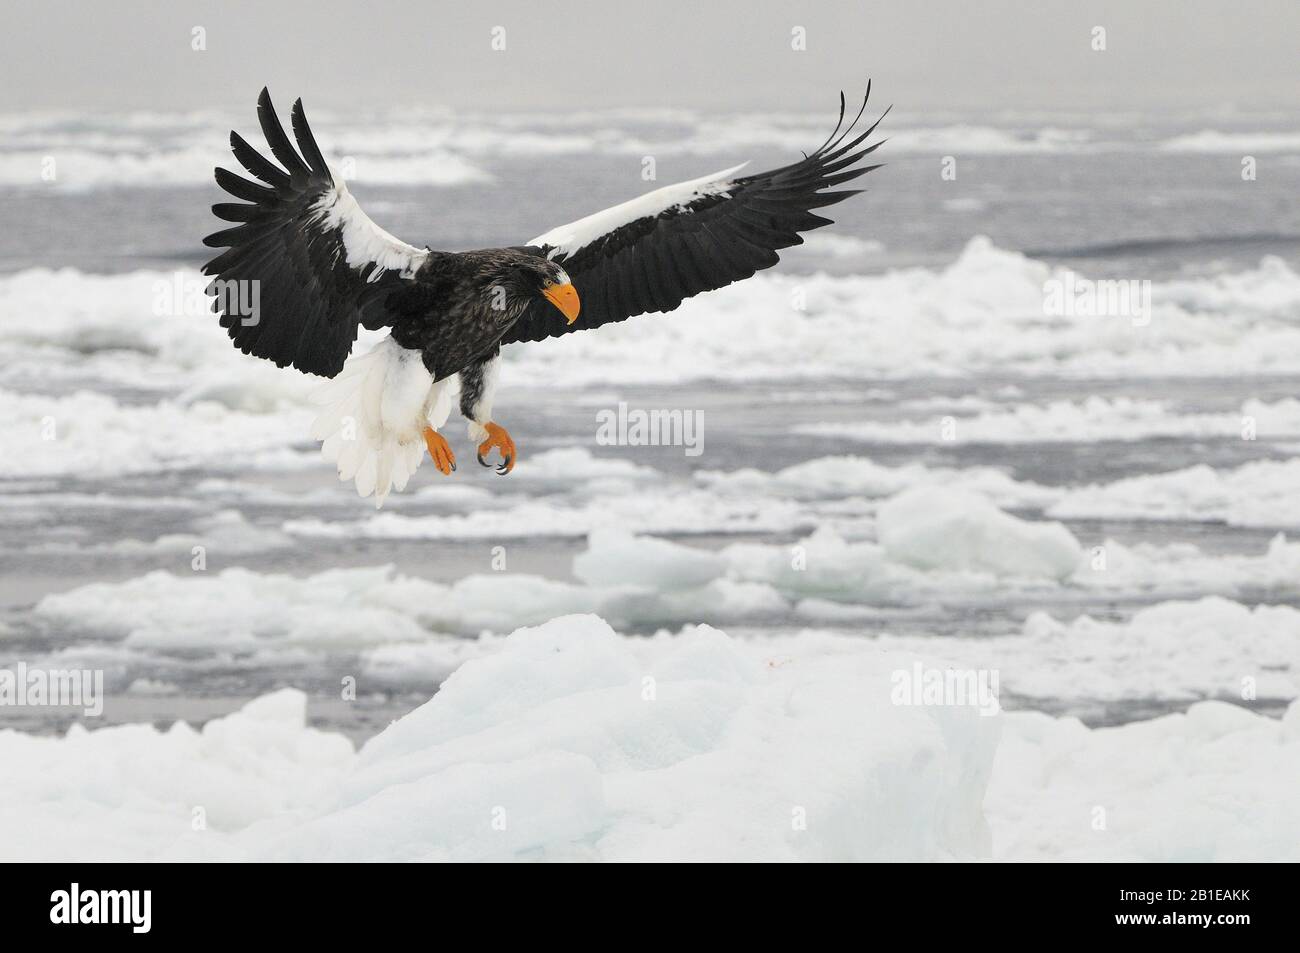 Stellers sea eagle (Haliaeetus pelagicus), descending, Japan, Hokkaido Stock Photo